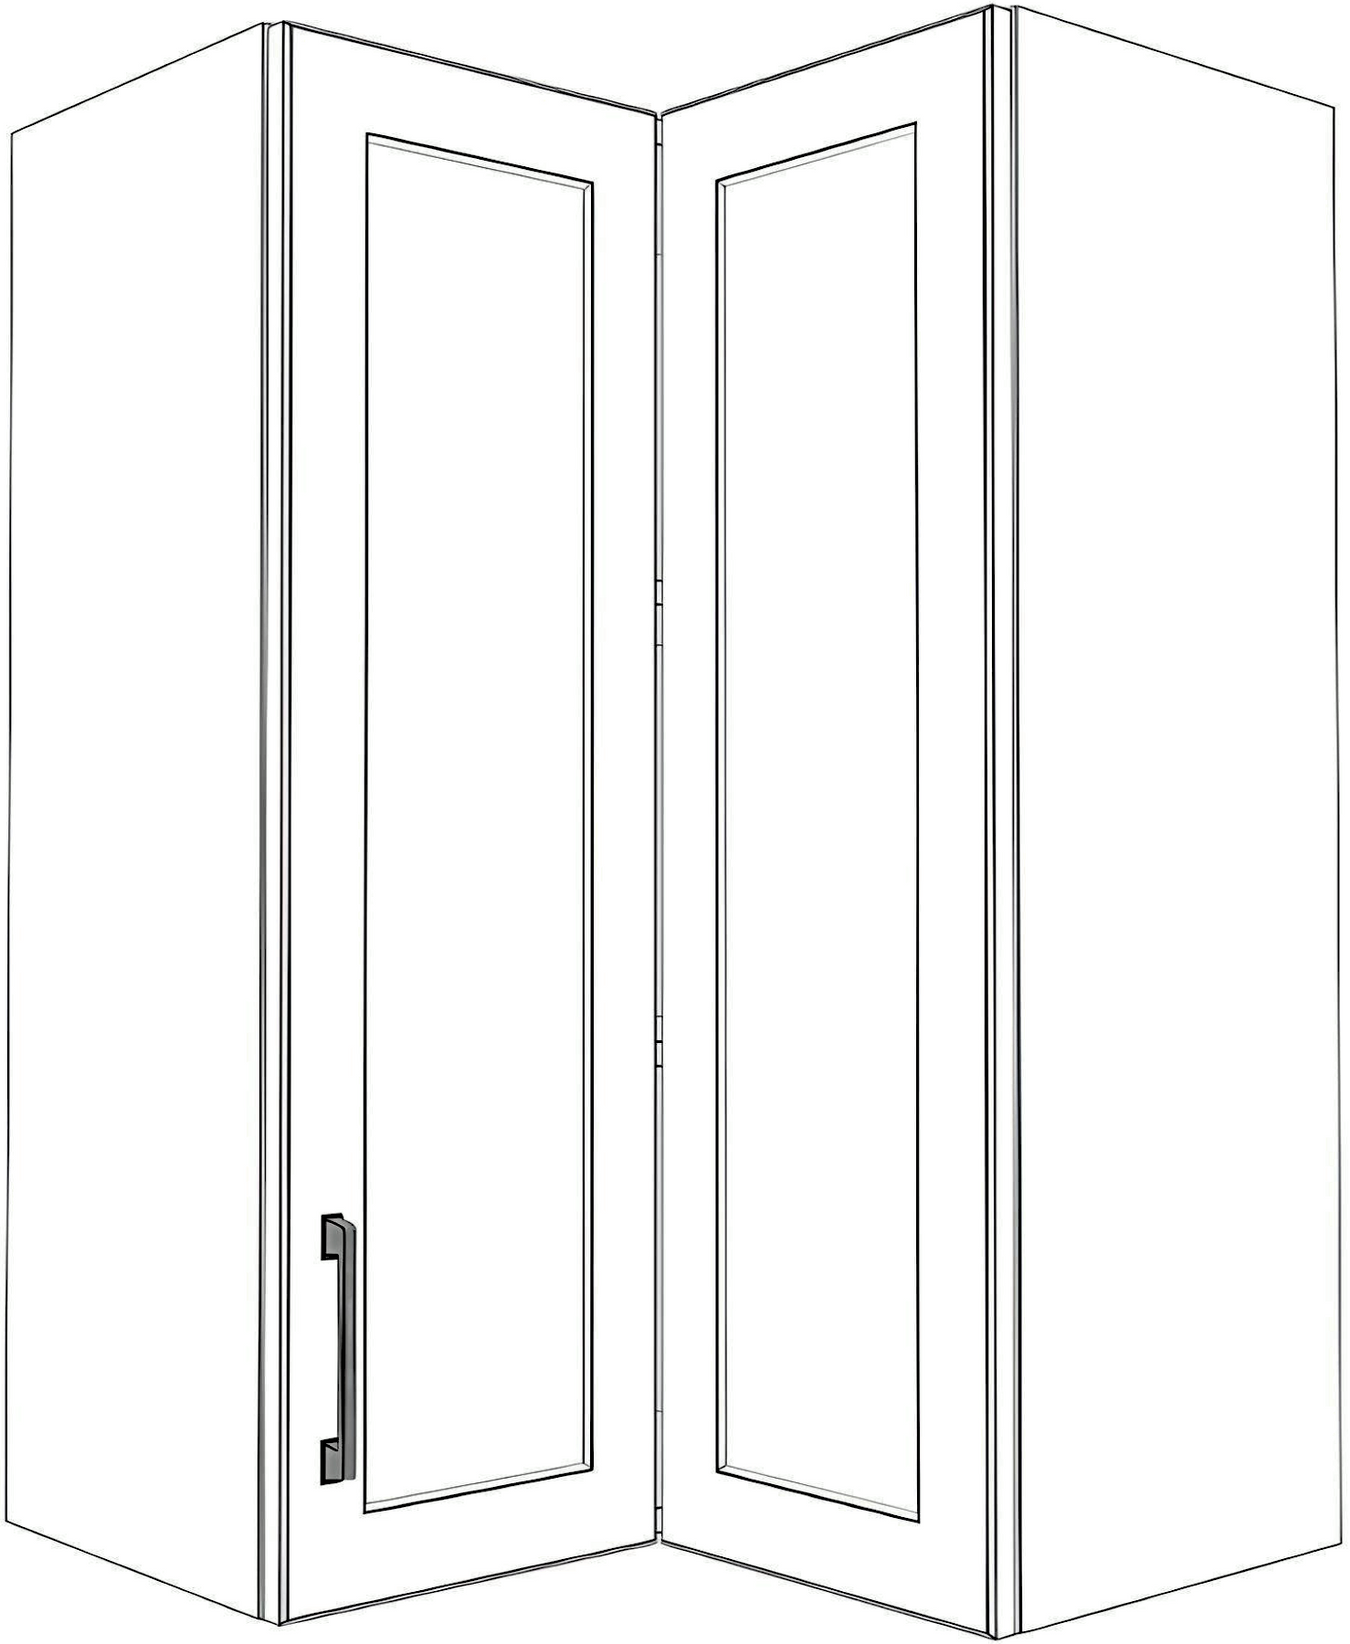 Upper Corner Cabinets - Painted Doors